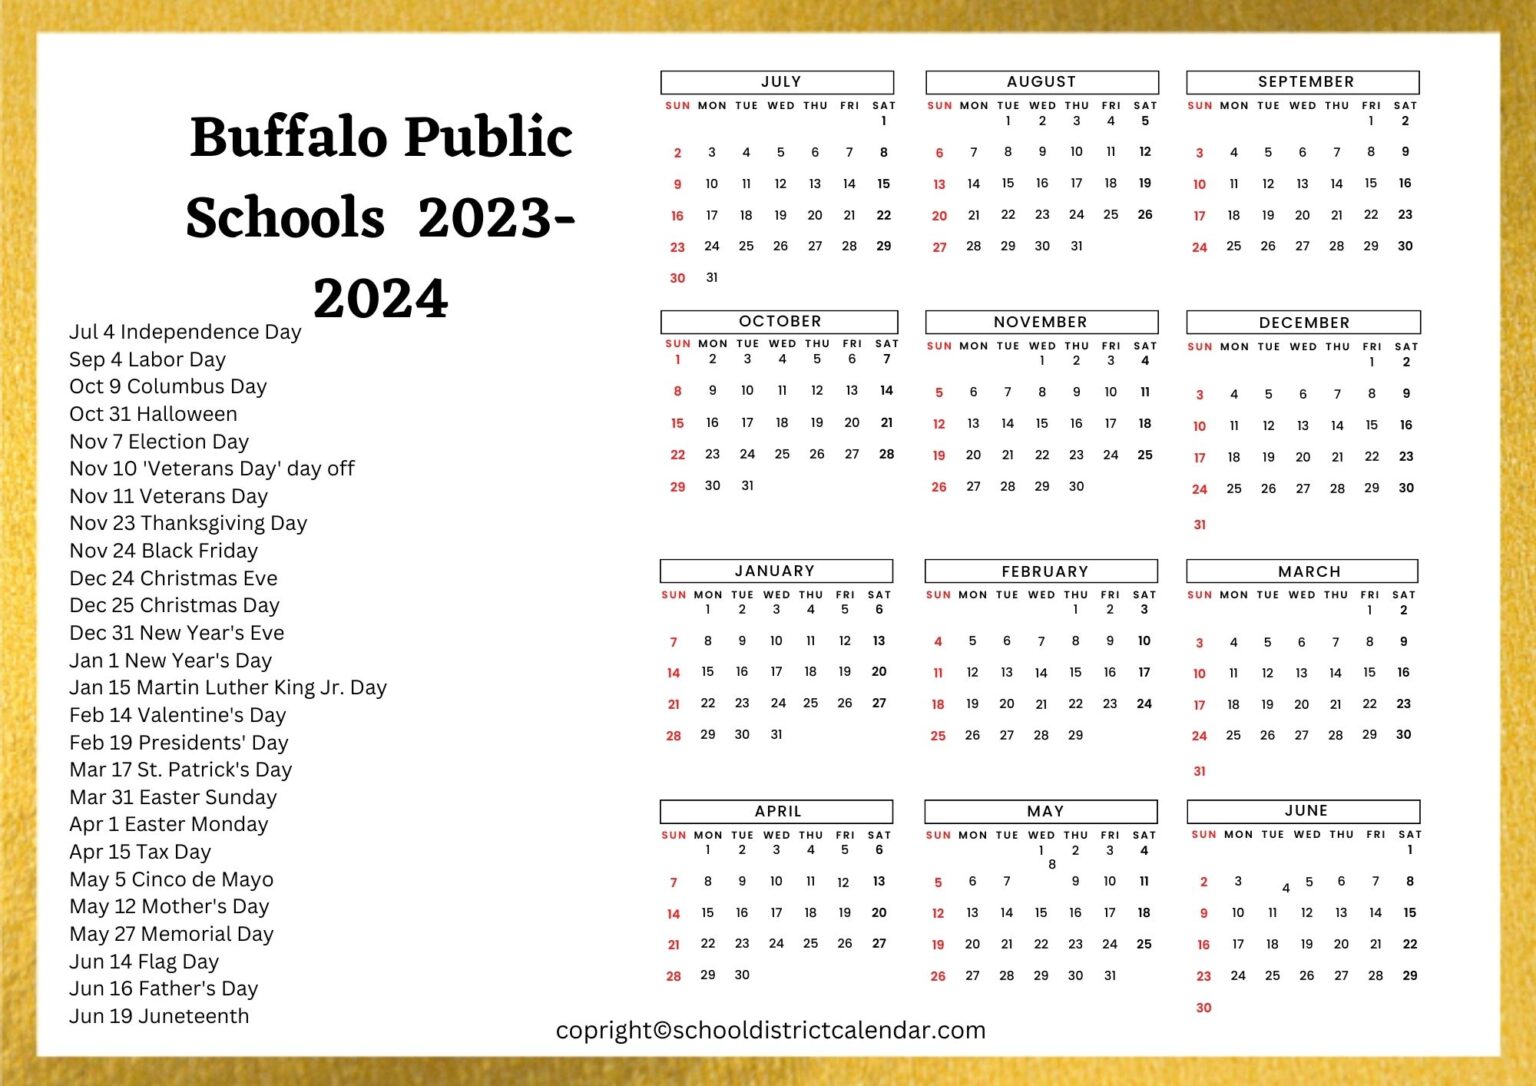 Buffalo Public Schools Calendar Holidays 2023 2024